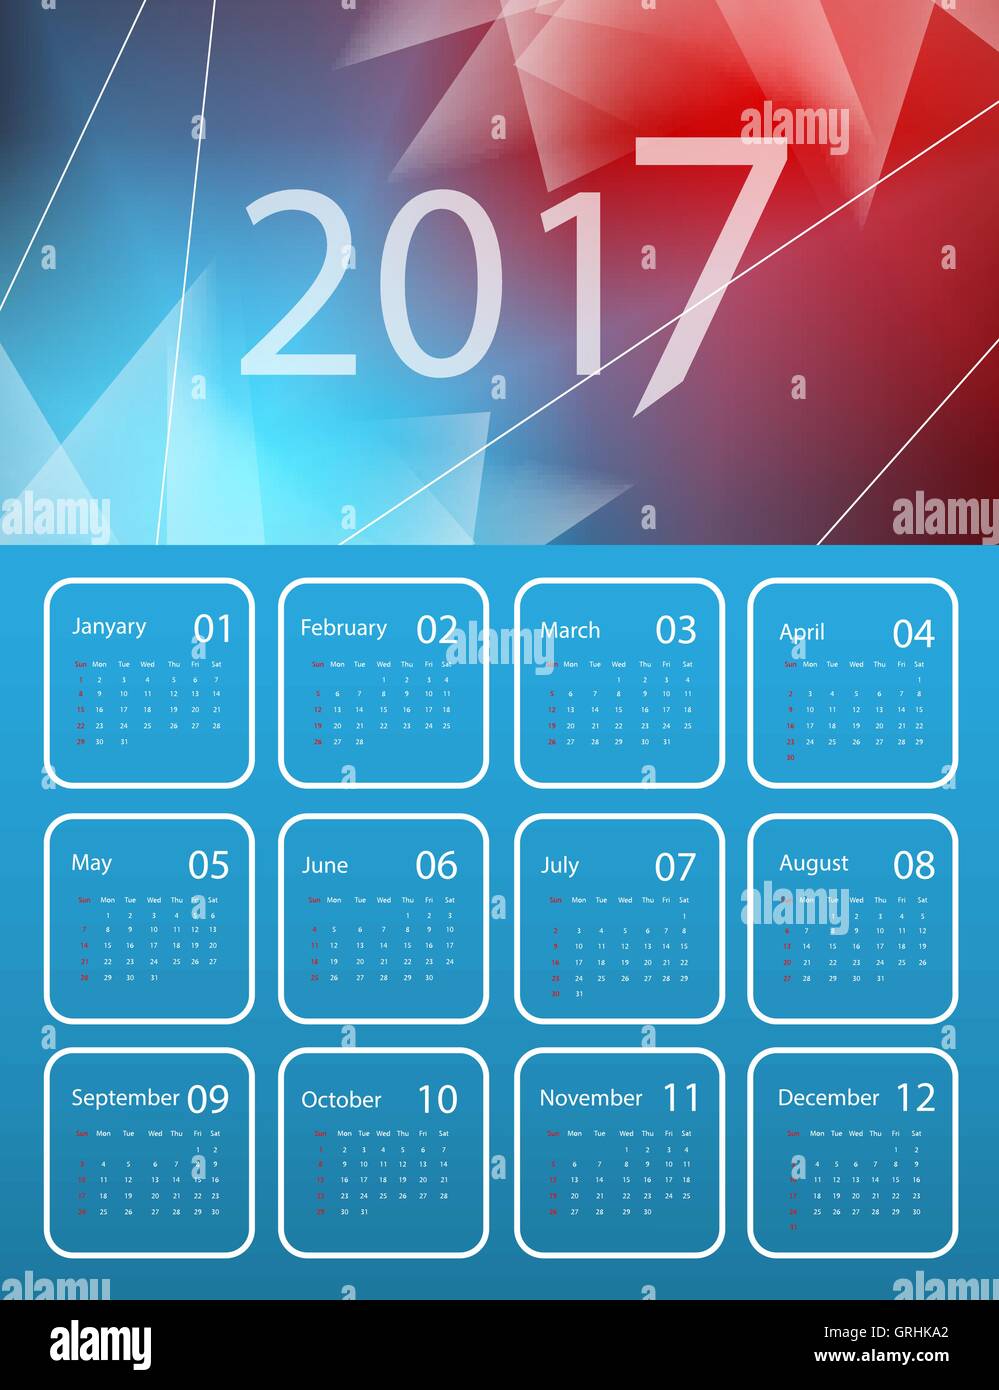 Vector calendar for 2017 Stock Vector